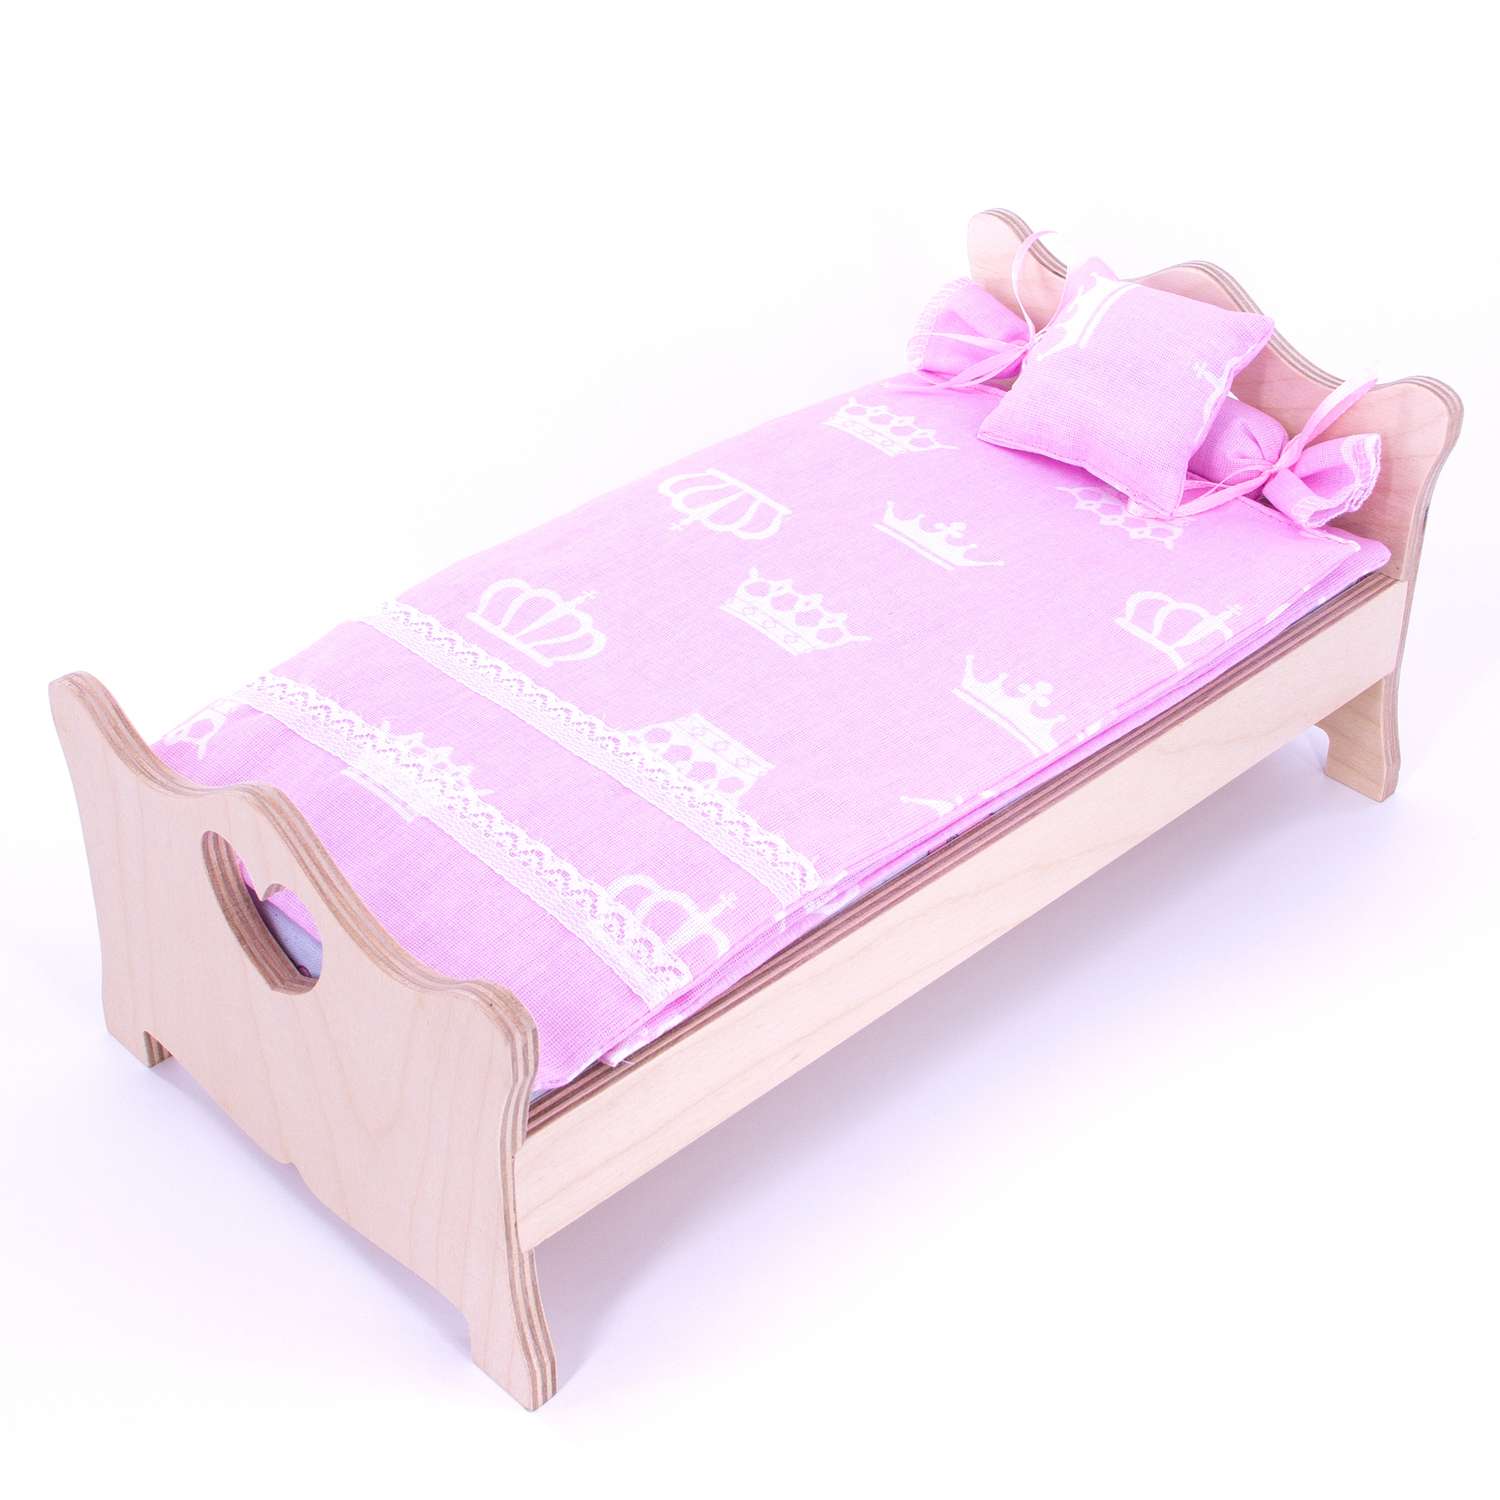 Комлпект постельного белья Модница для куклы 29 см 2002 розовый 2002розовый - фото 6